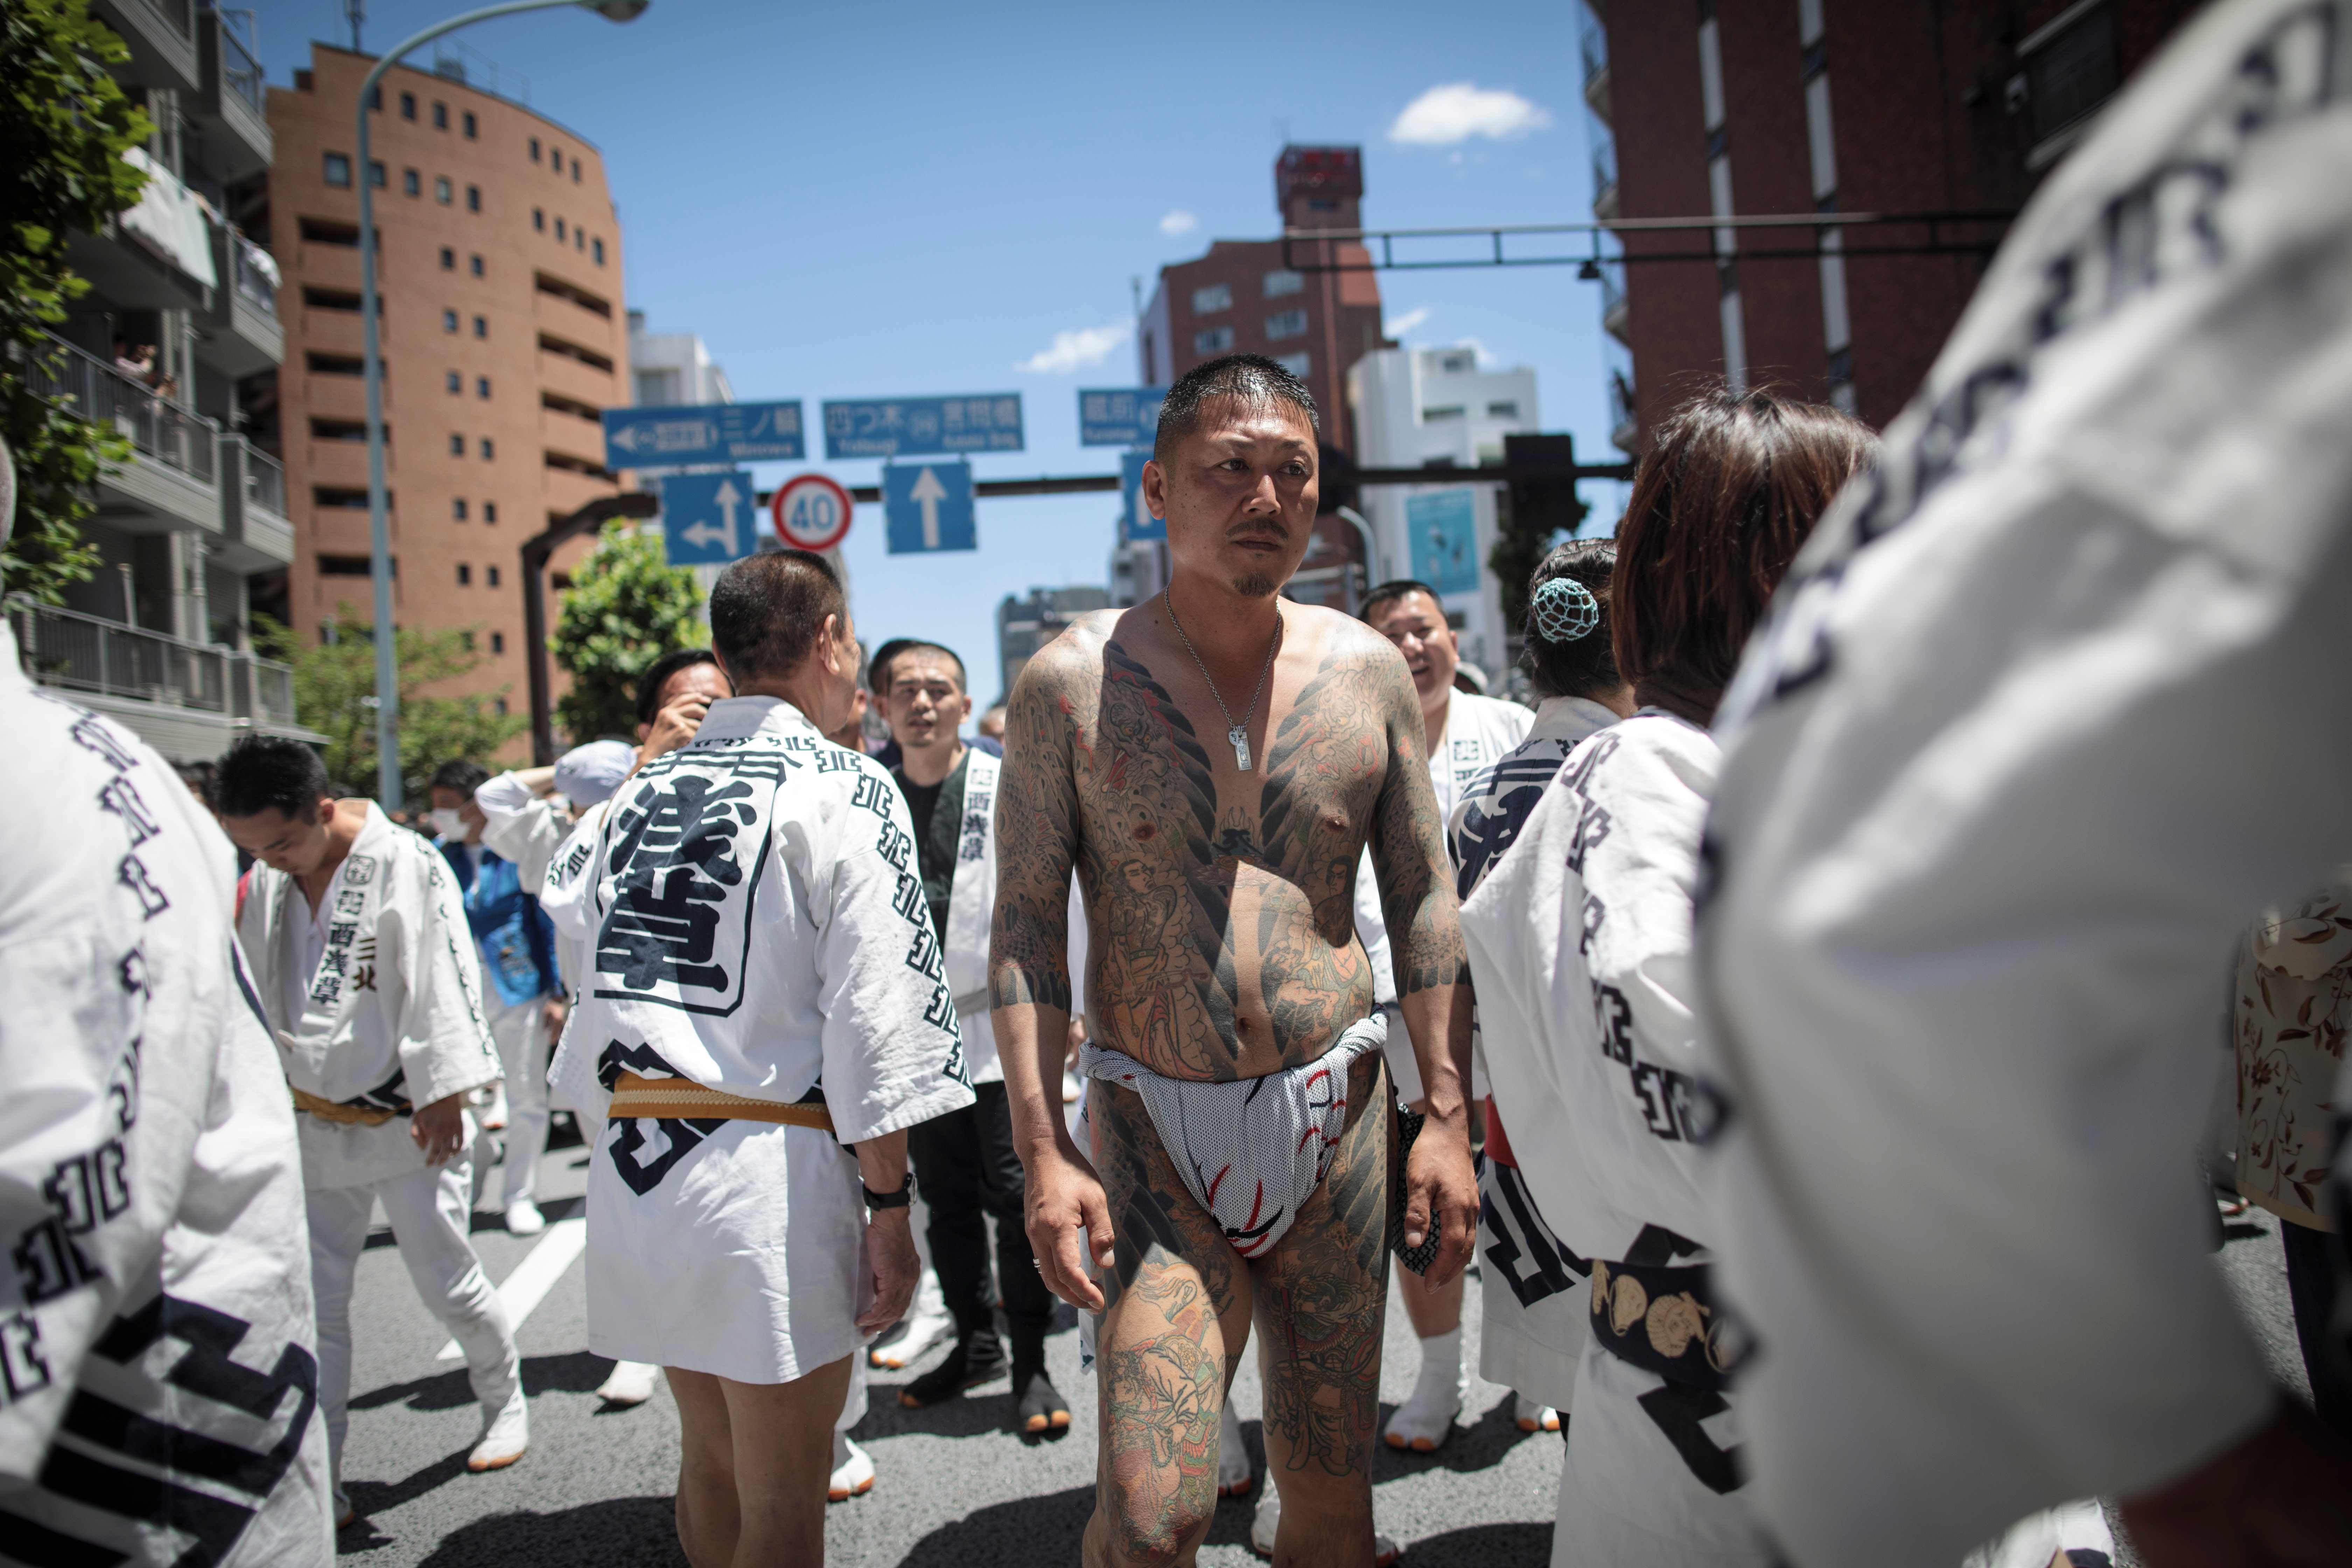 طقوس خاصة لأقلية الشنتو اليابانية خلال احتفالات دينية